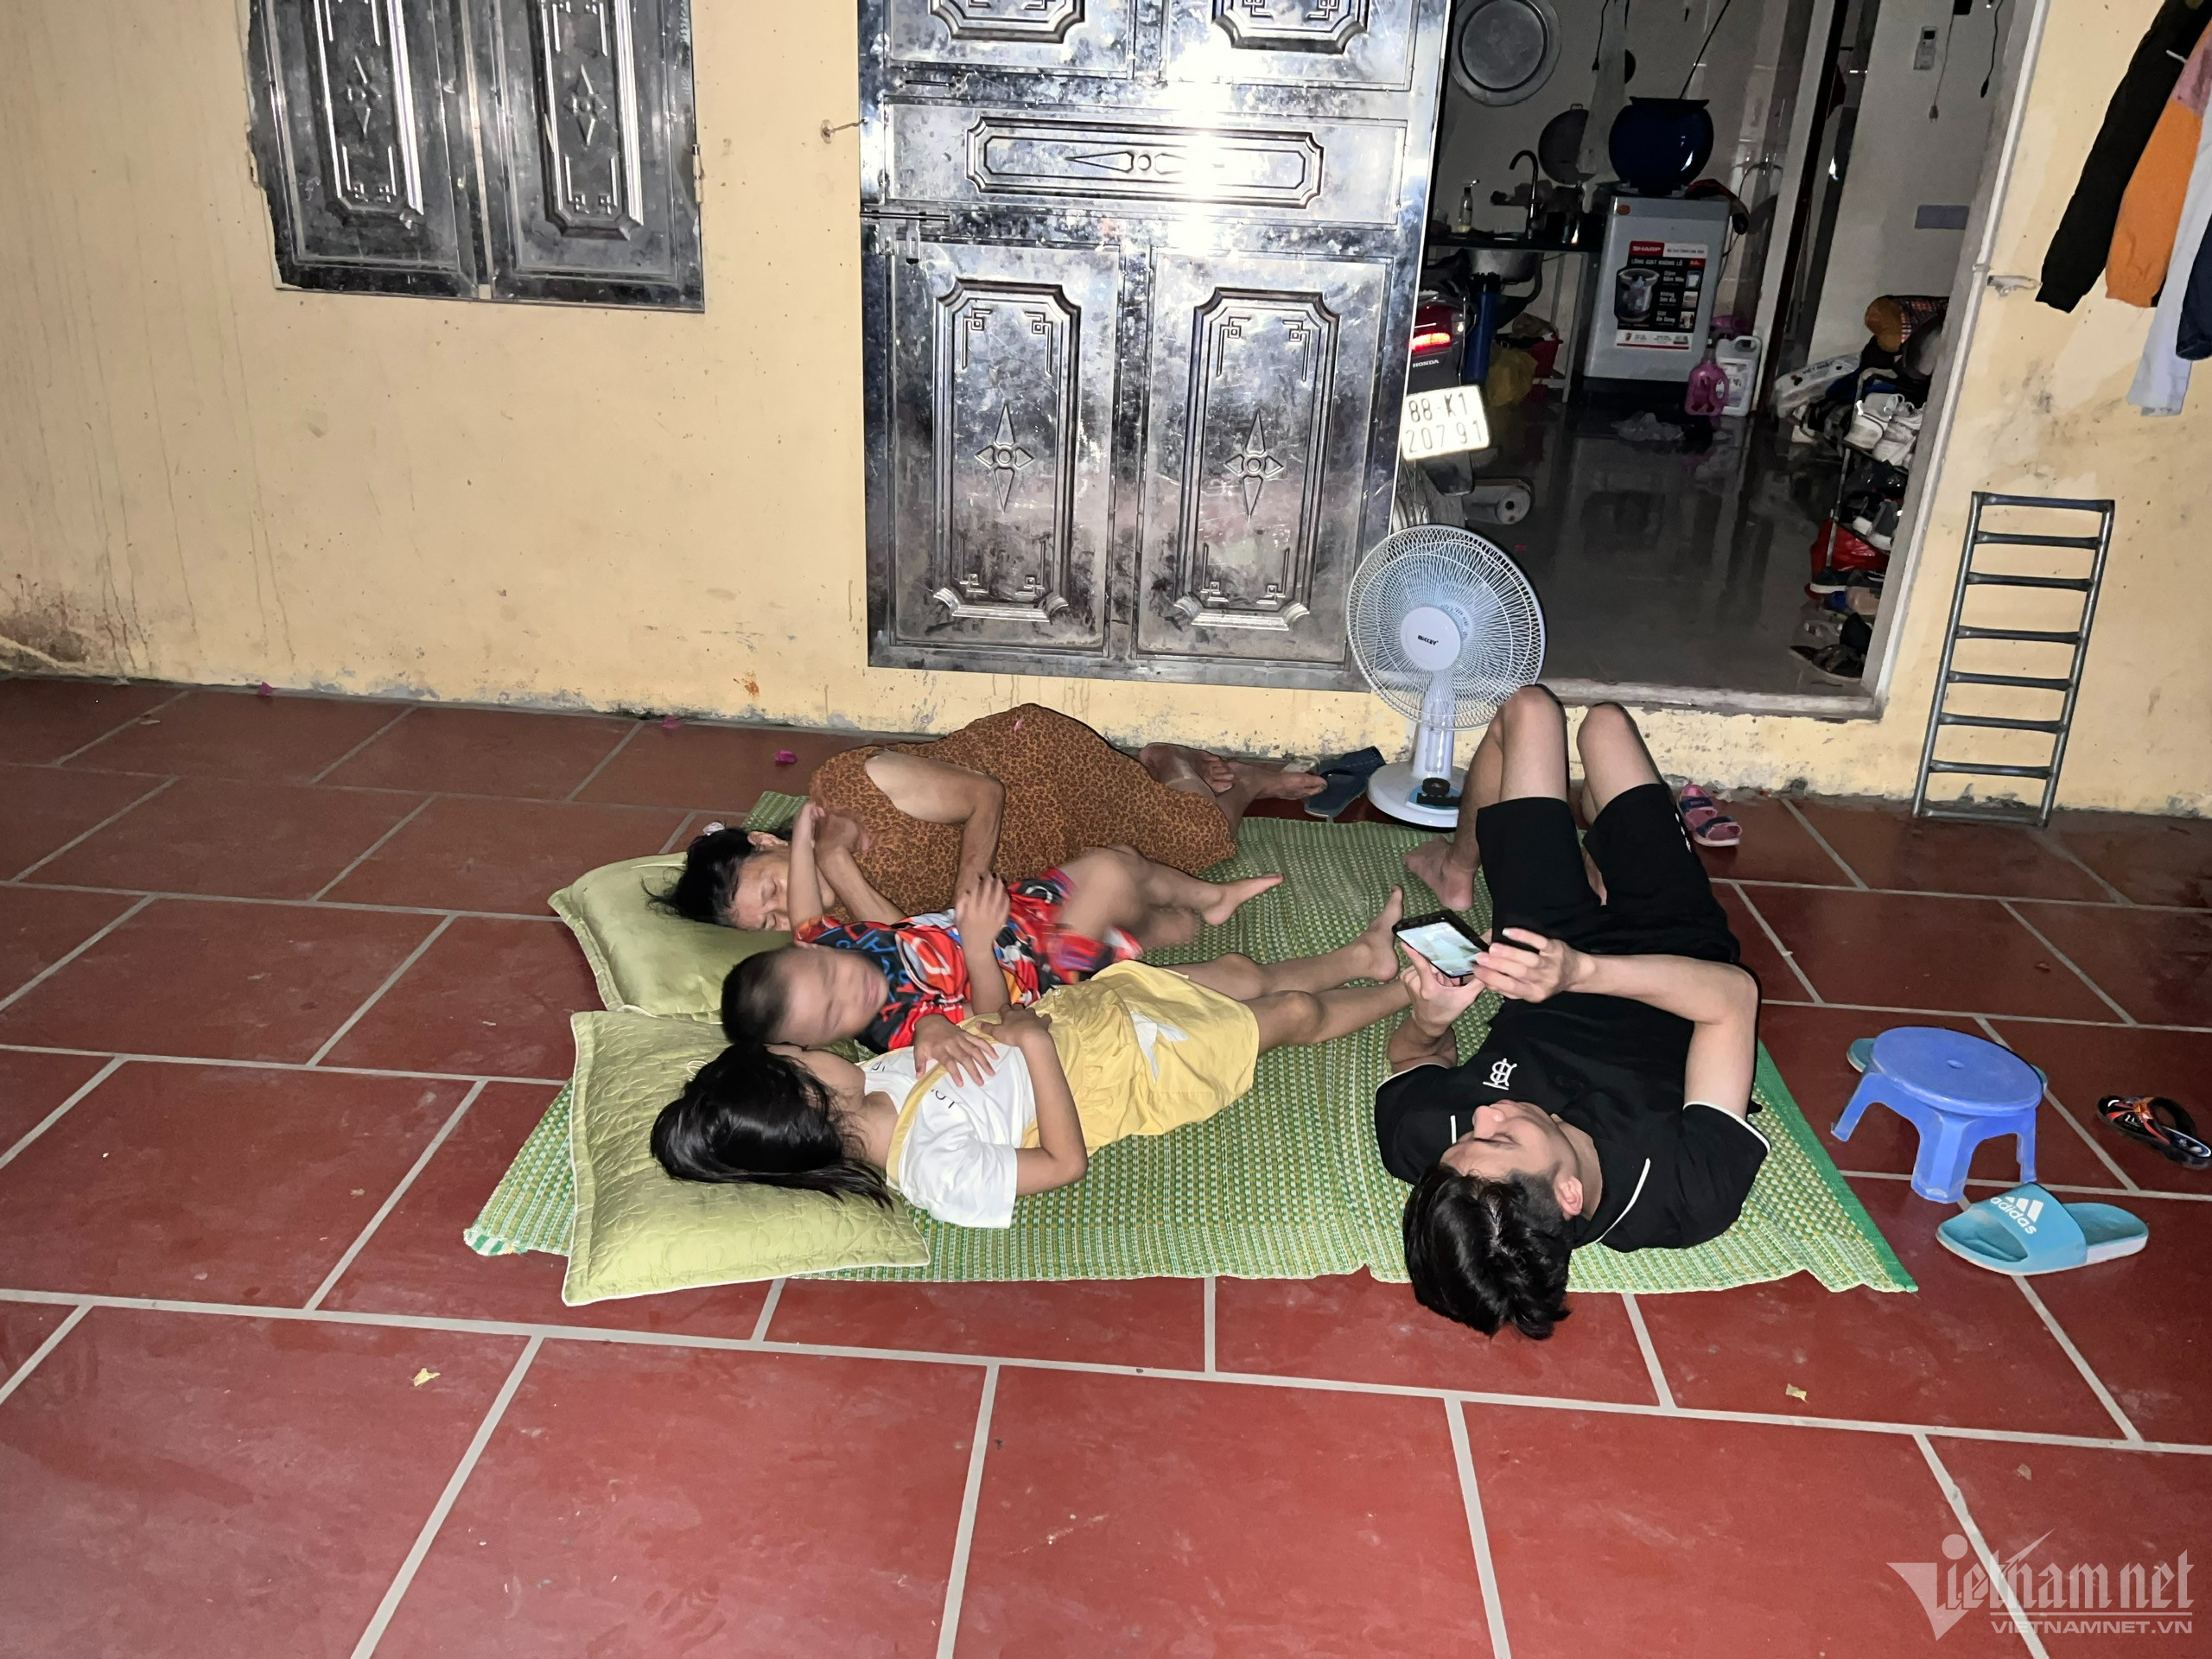 Nóng thiêu đốt lại mất điện, đêm khó ngủ của người dân ngoại thành Hà Nội